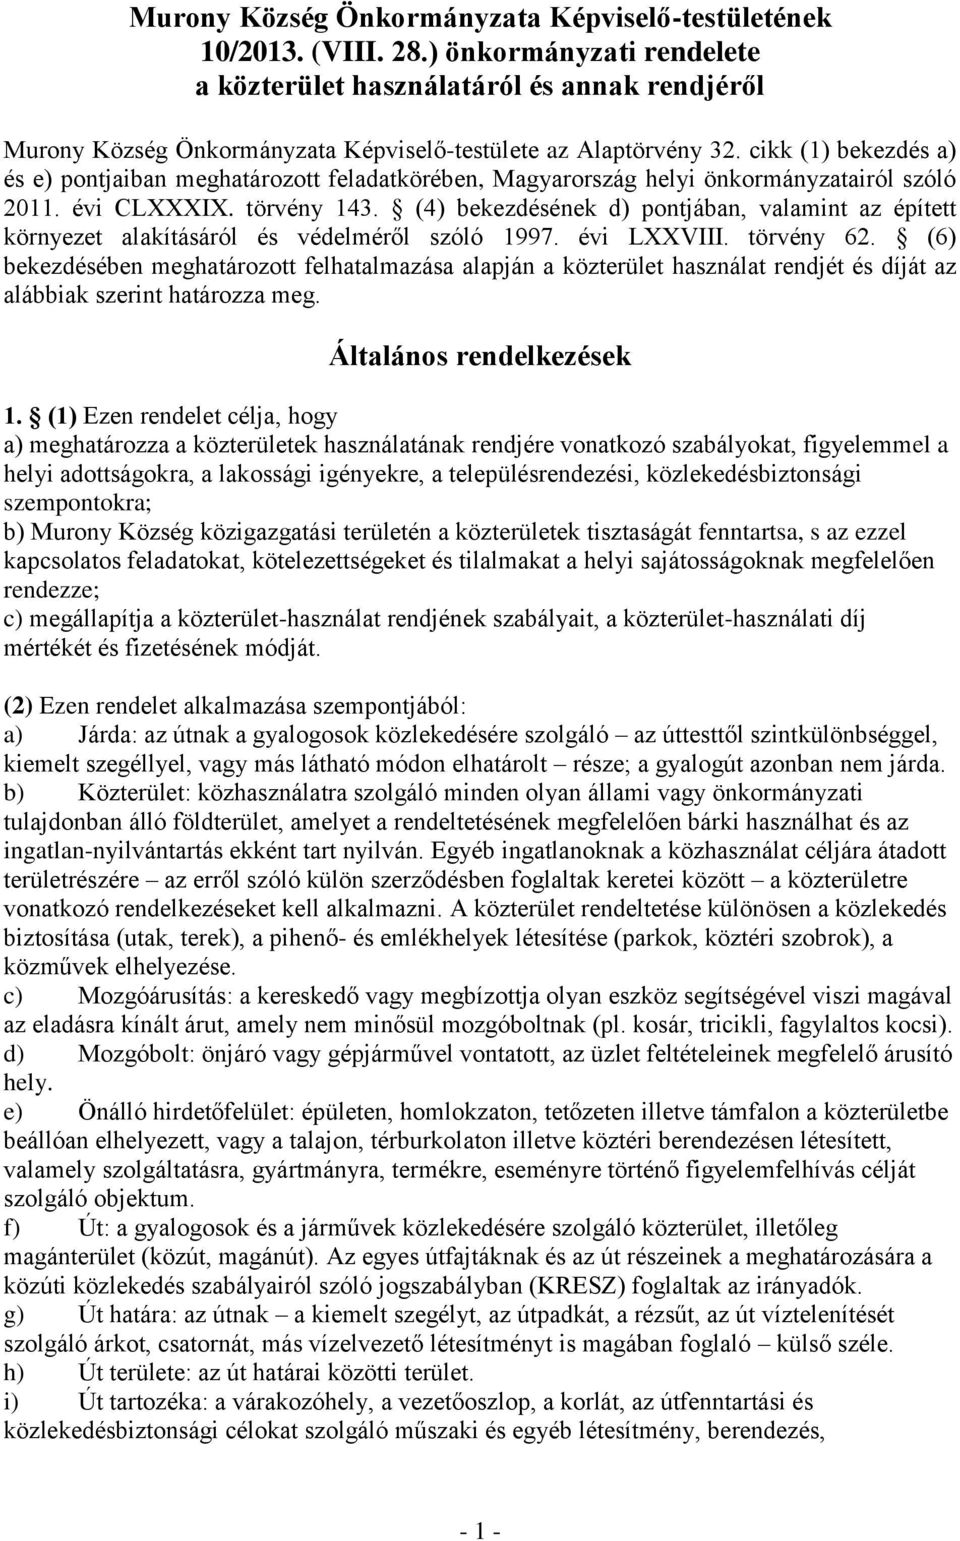 cikk (1) bekezdés a) és e) pontjaiban meghatározott feladatkörében, Magyarország helyi önkormányzatairól szóló 2011. évi CLXXXIX. törvény 143.